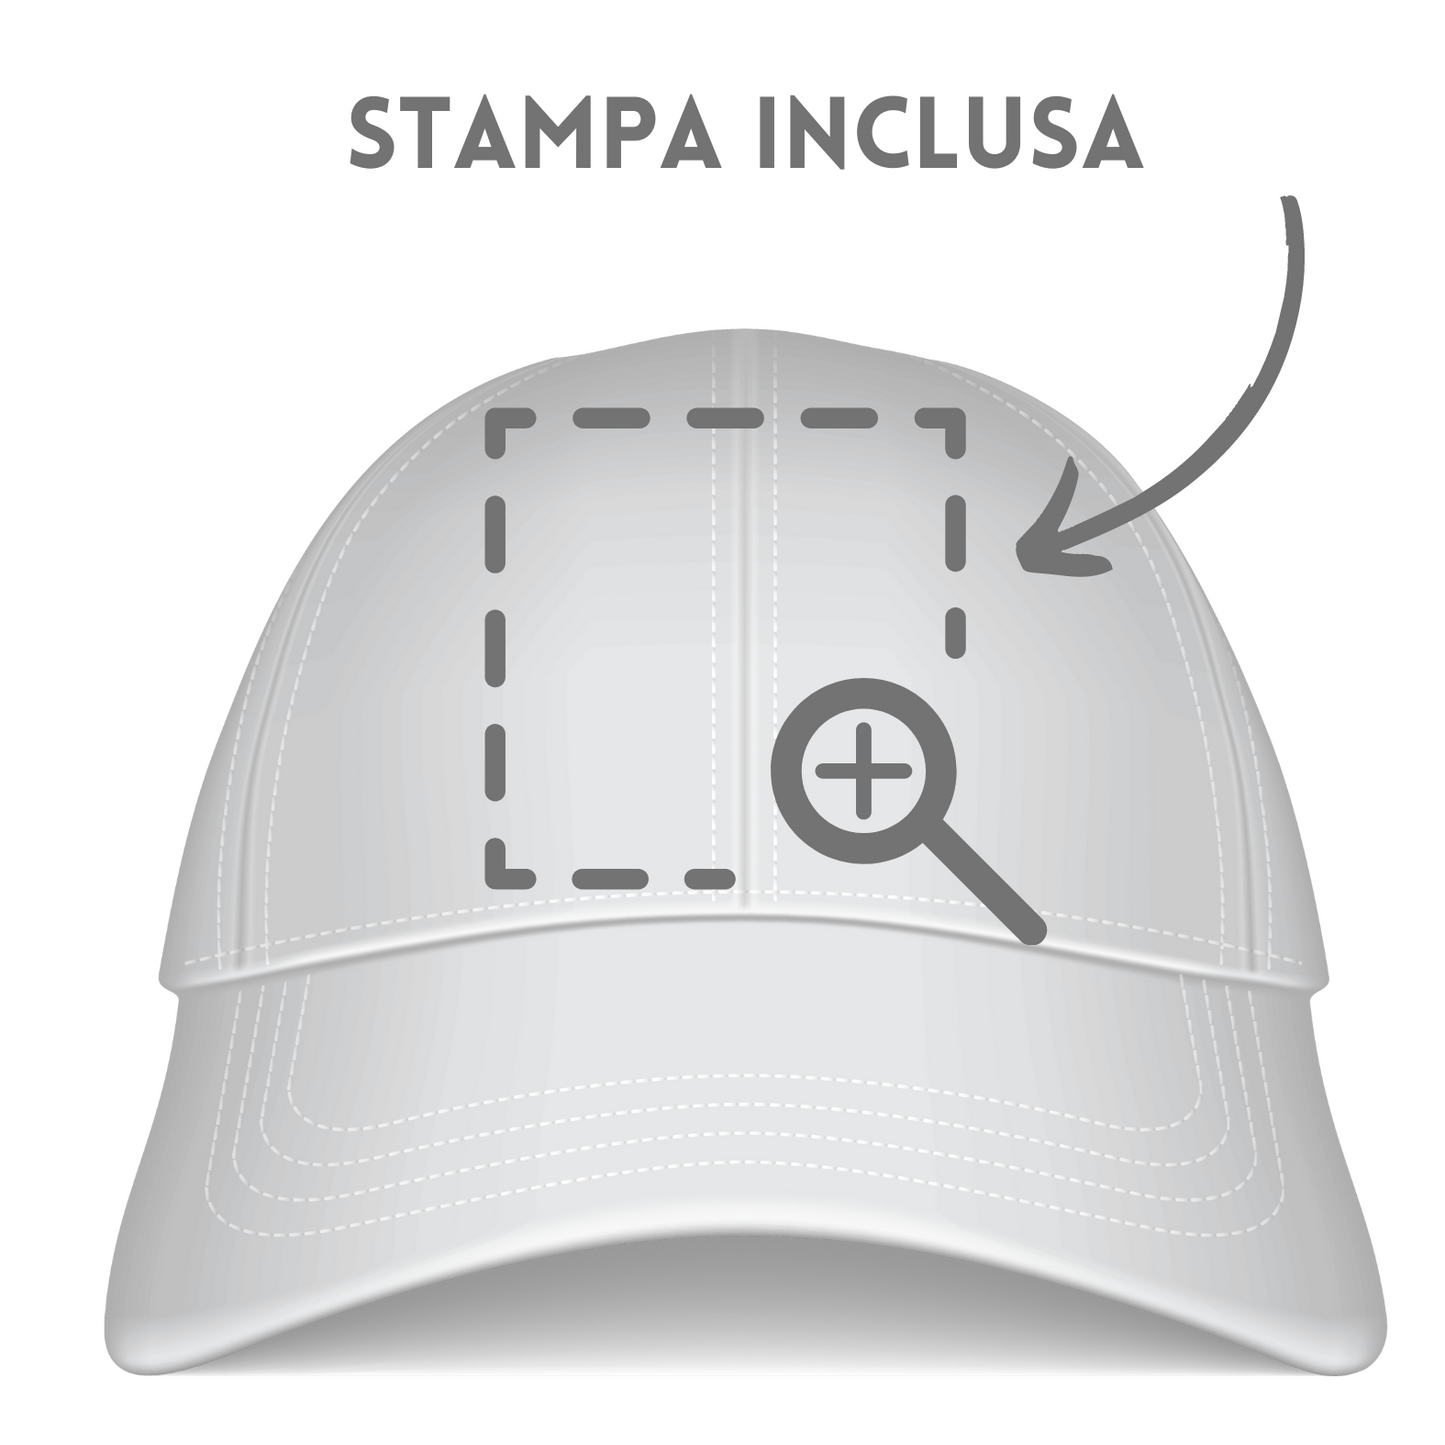 Cappellini personalizzati PM103